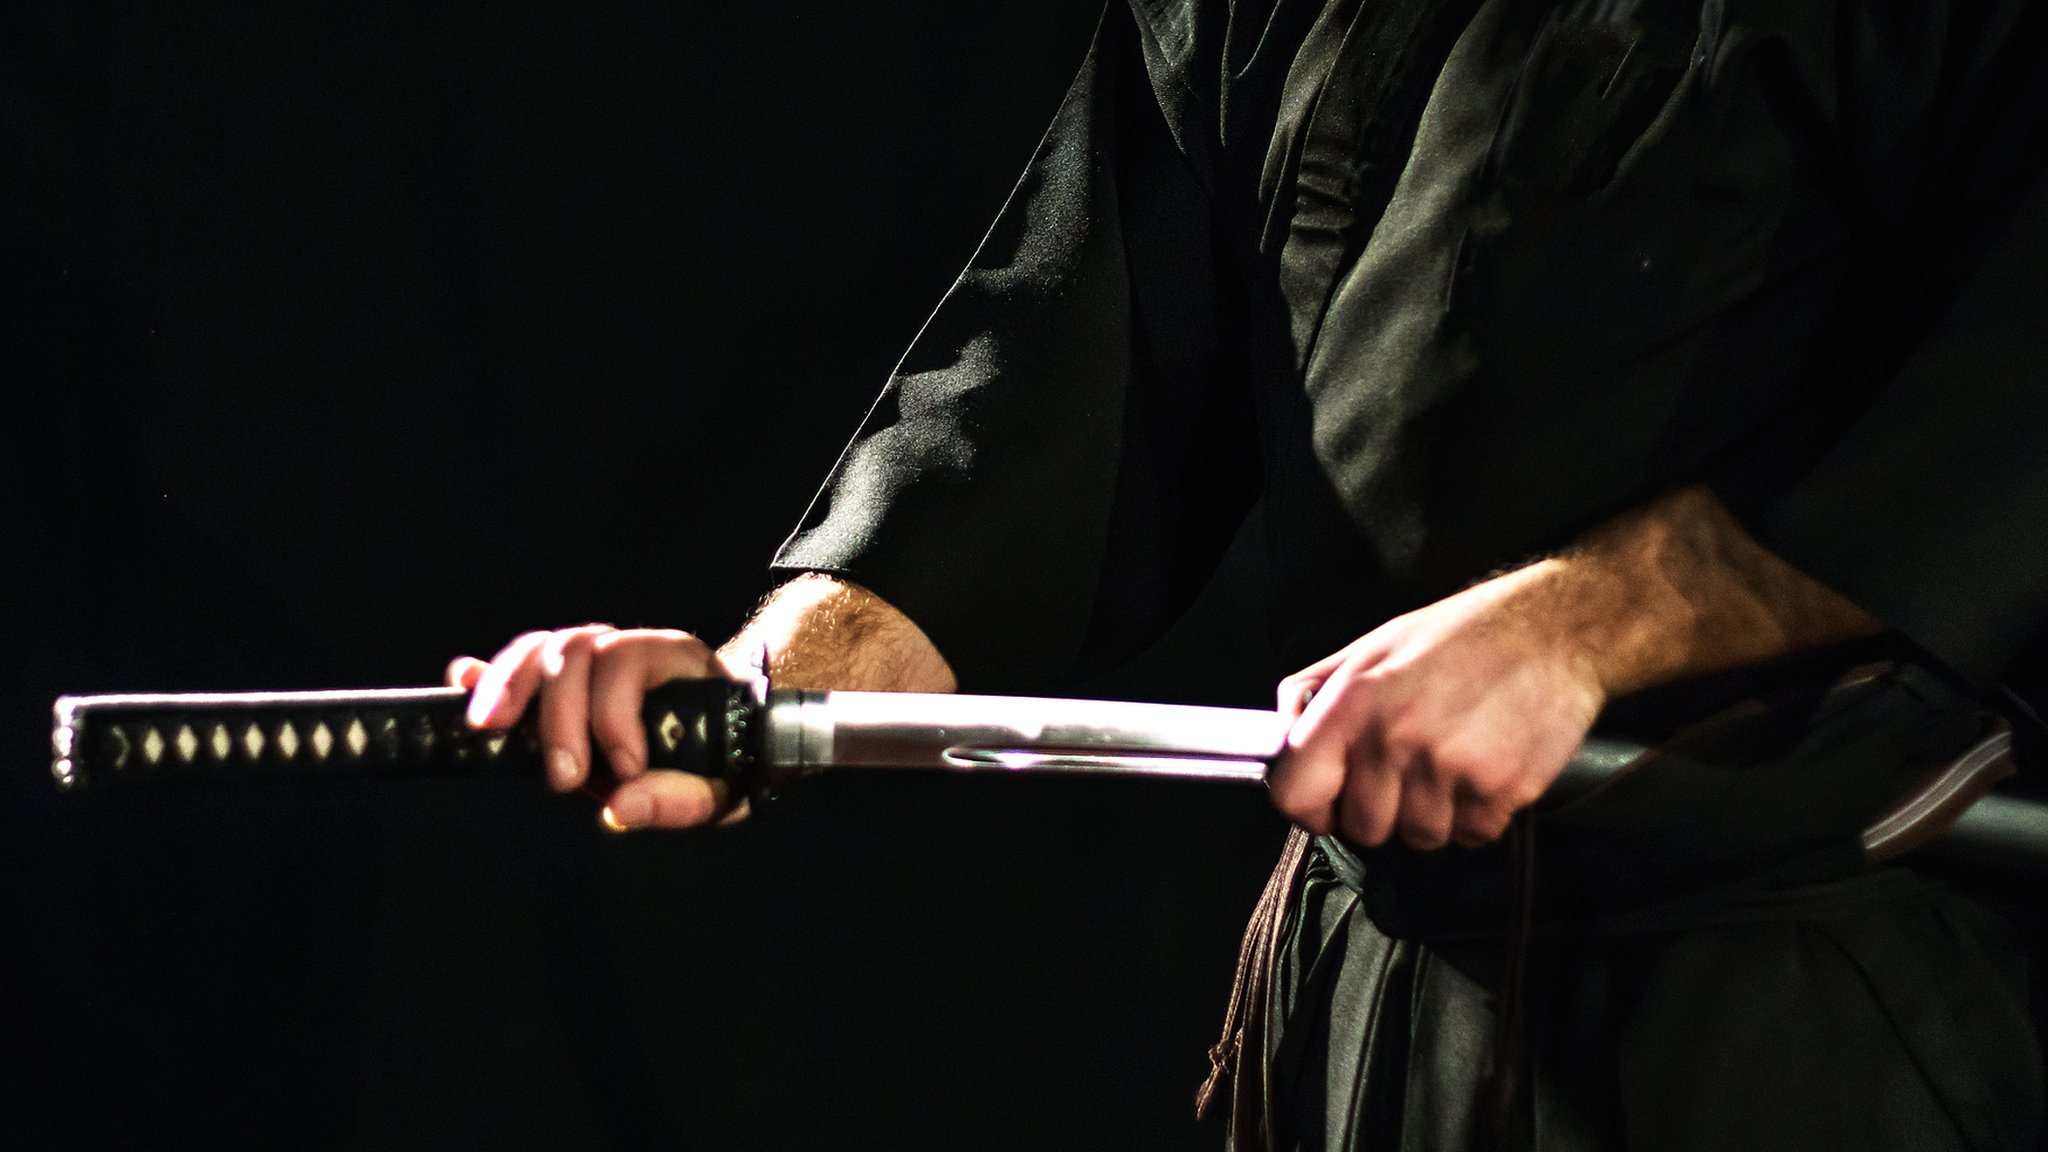 1 250 видео по запросу Меч самурая доступны в рамках роялти-фри лицензии